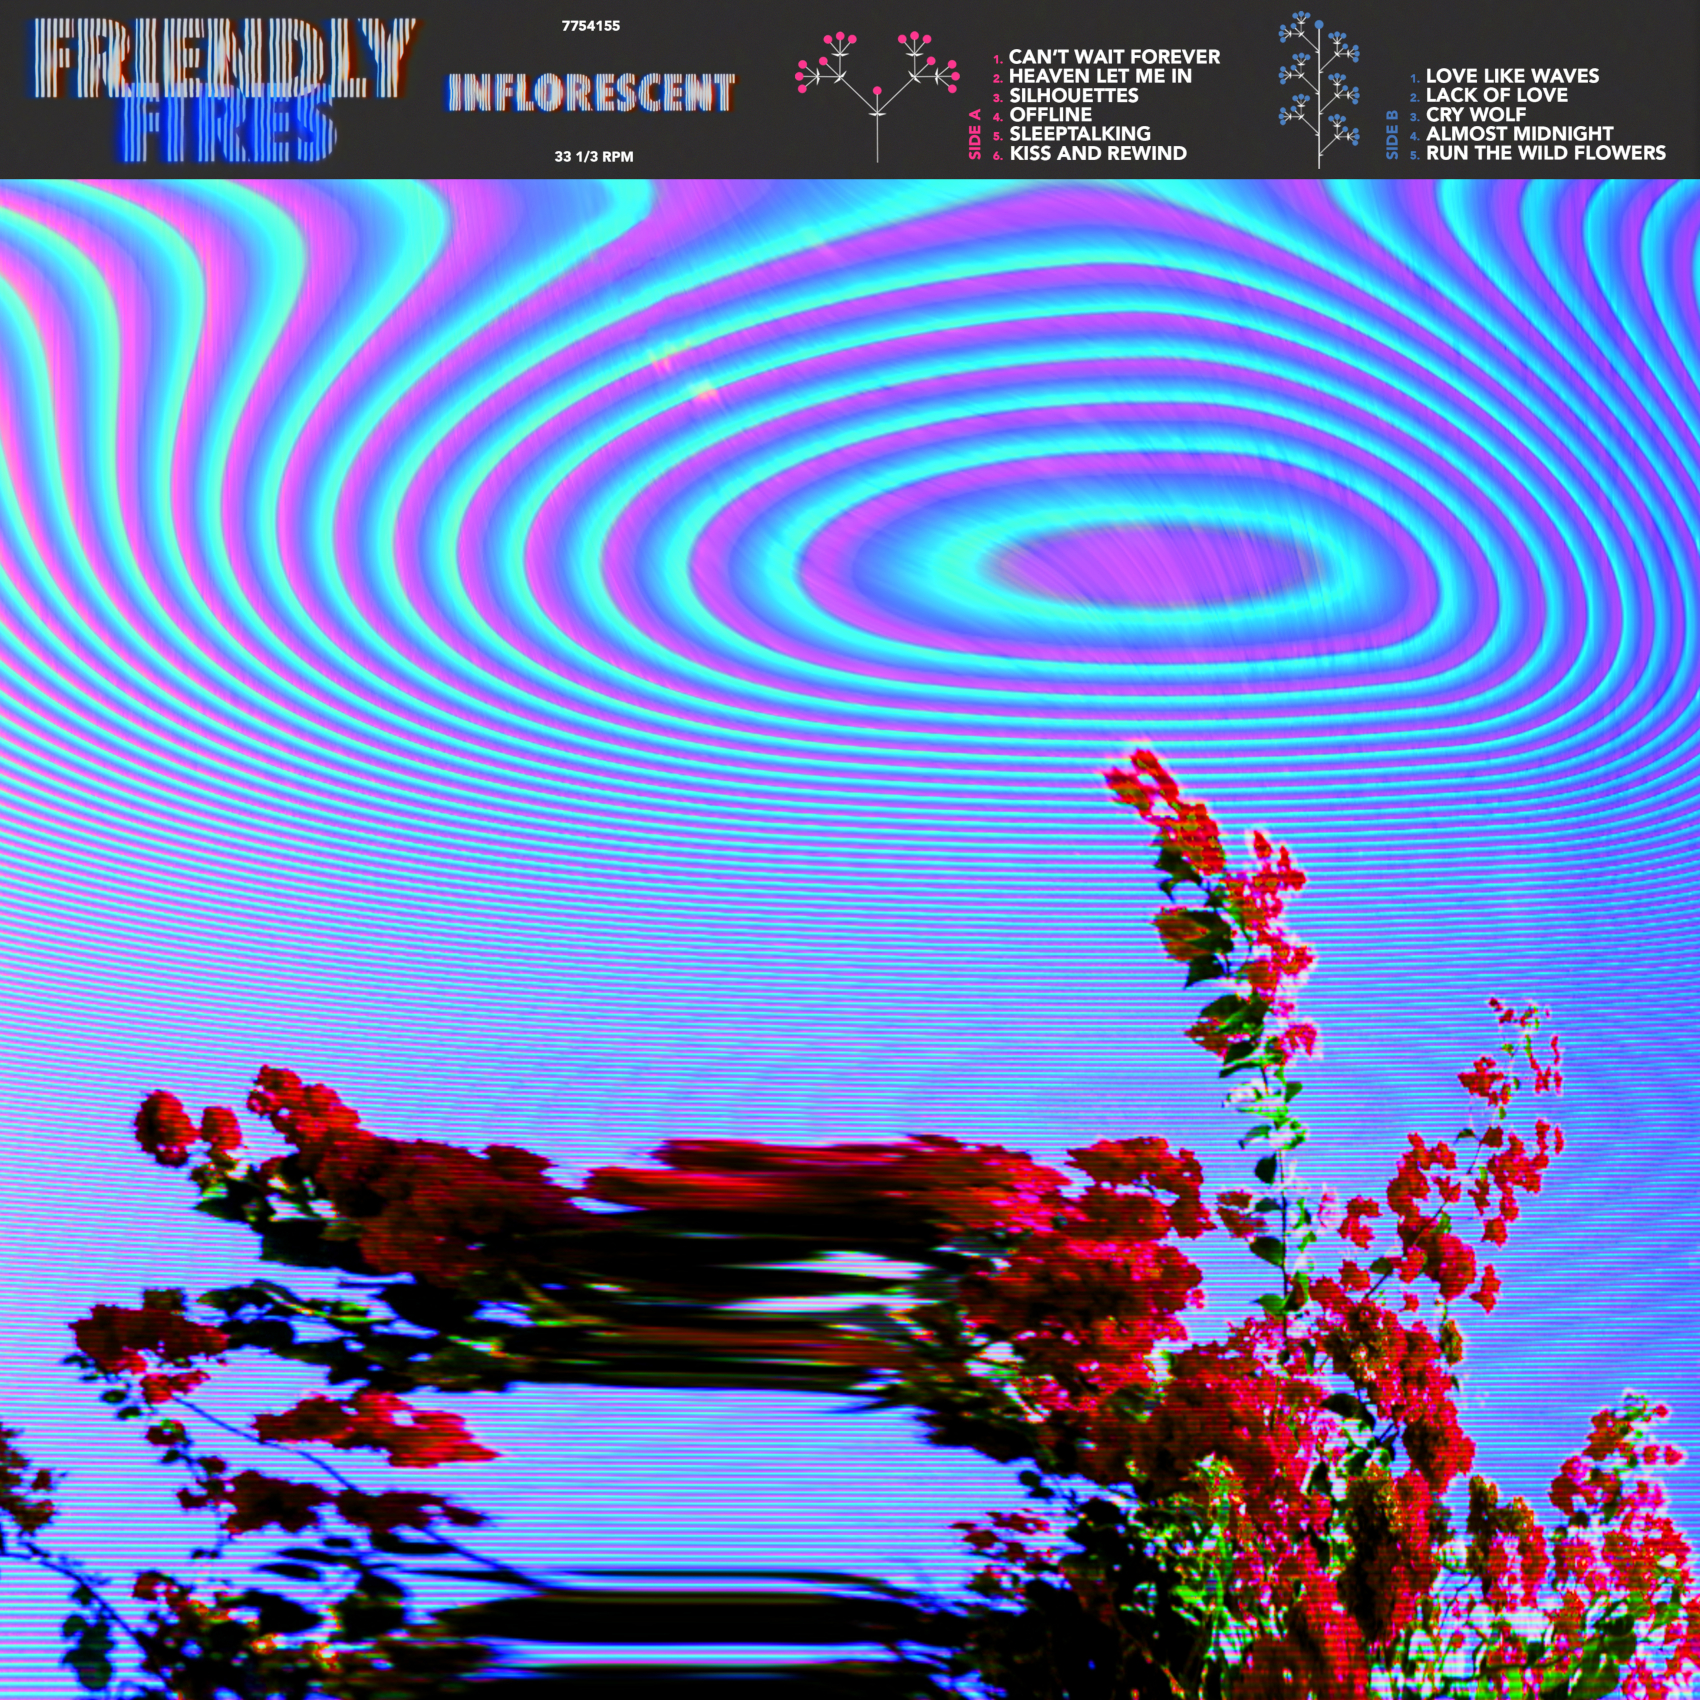 Wyczekiwana trzecia płyta Friendly Fires już dostępna!